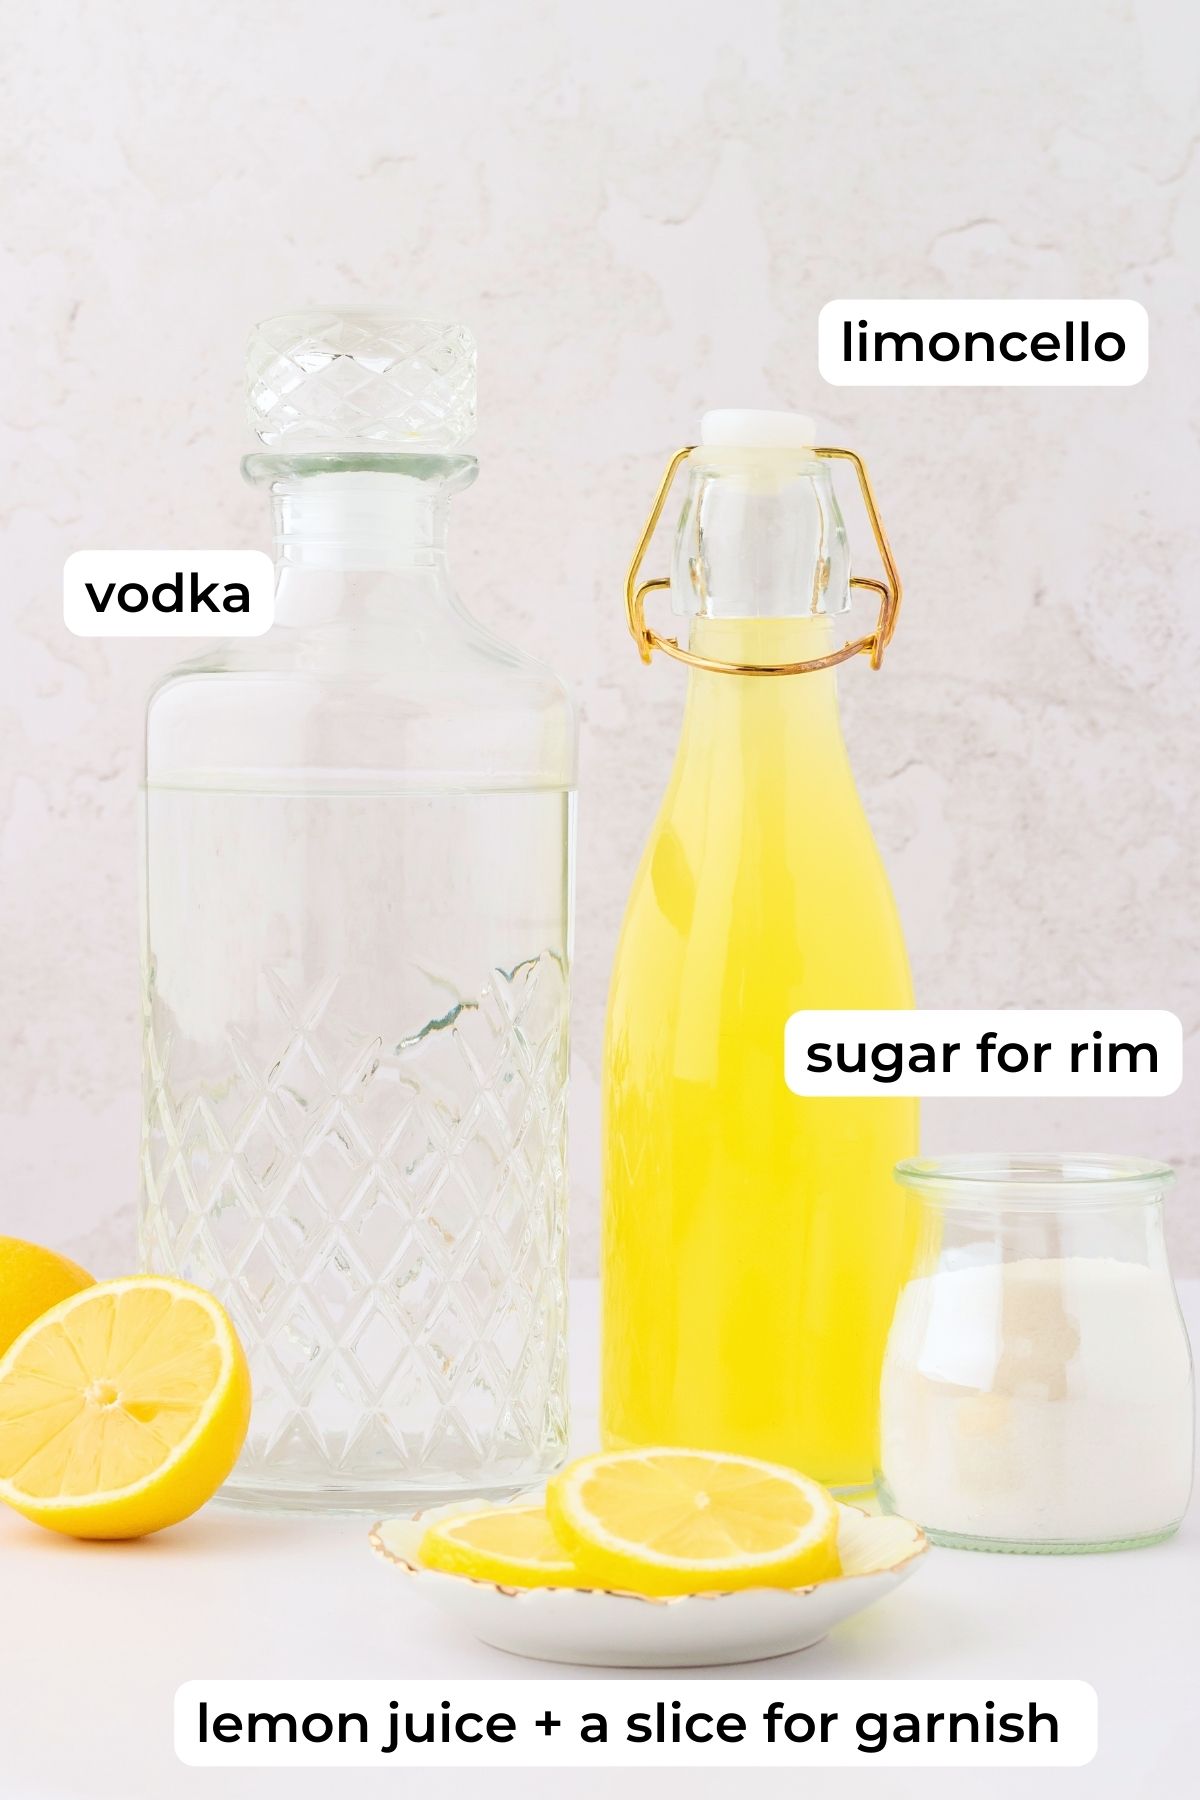 limoncello martini ingredients